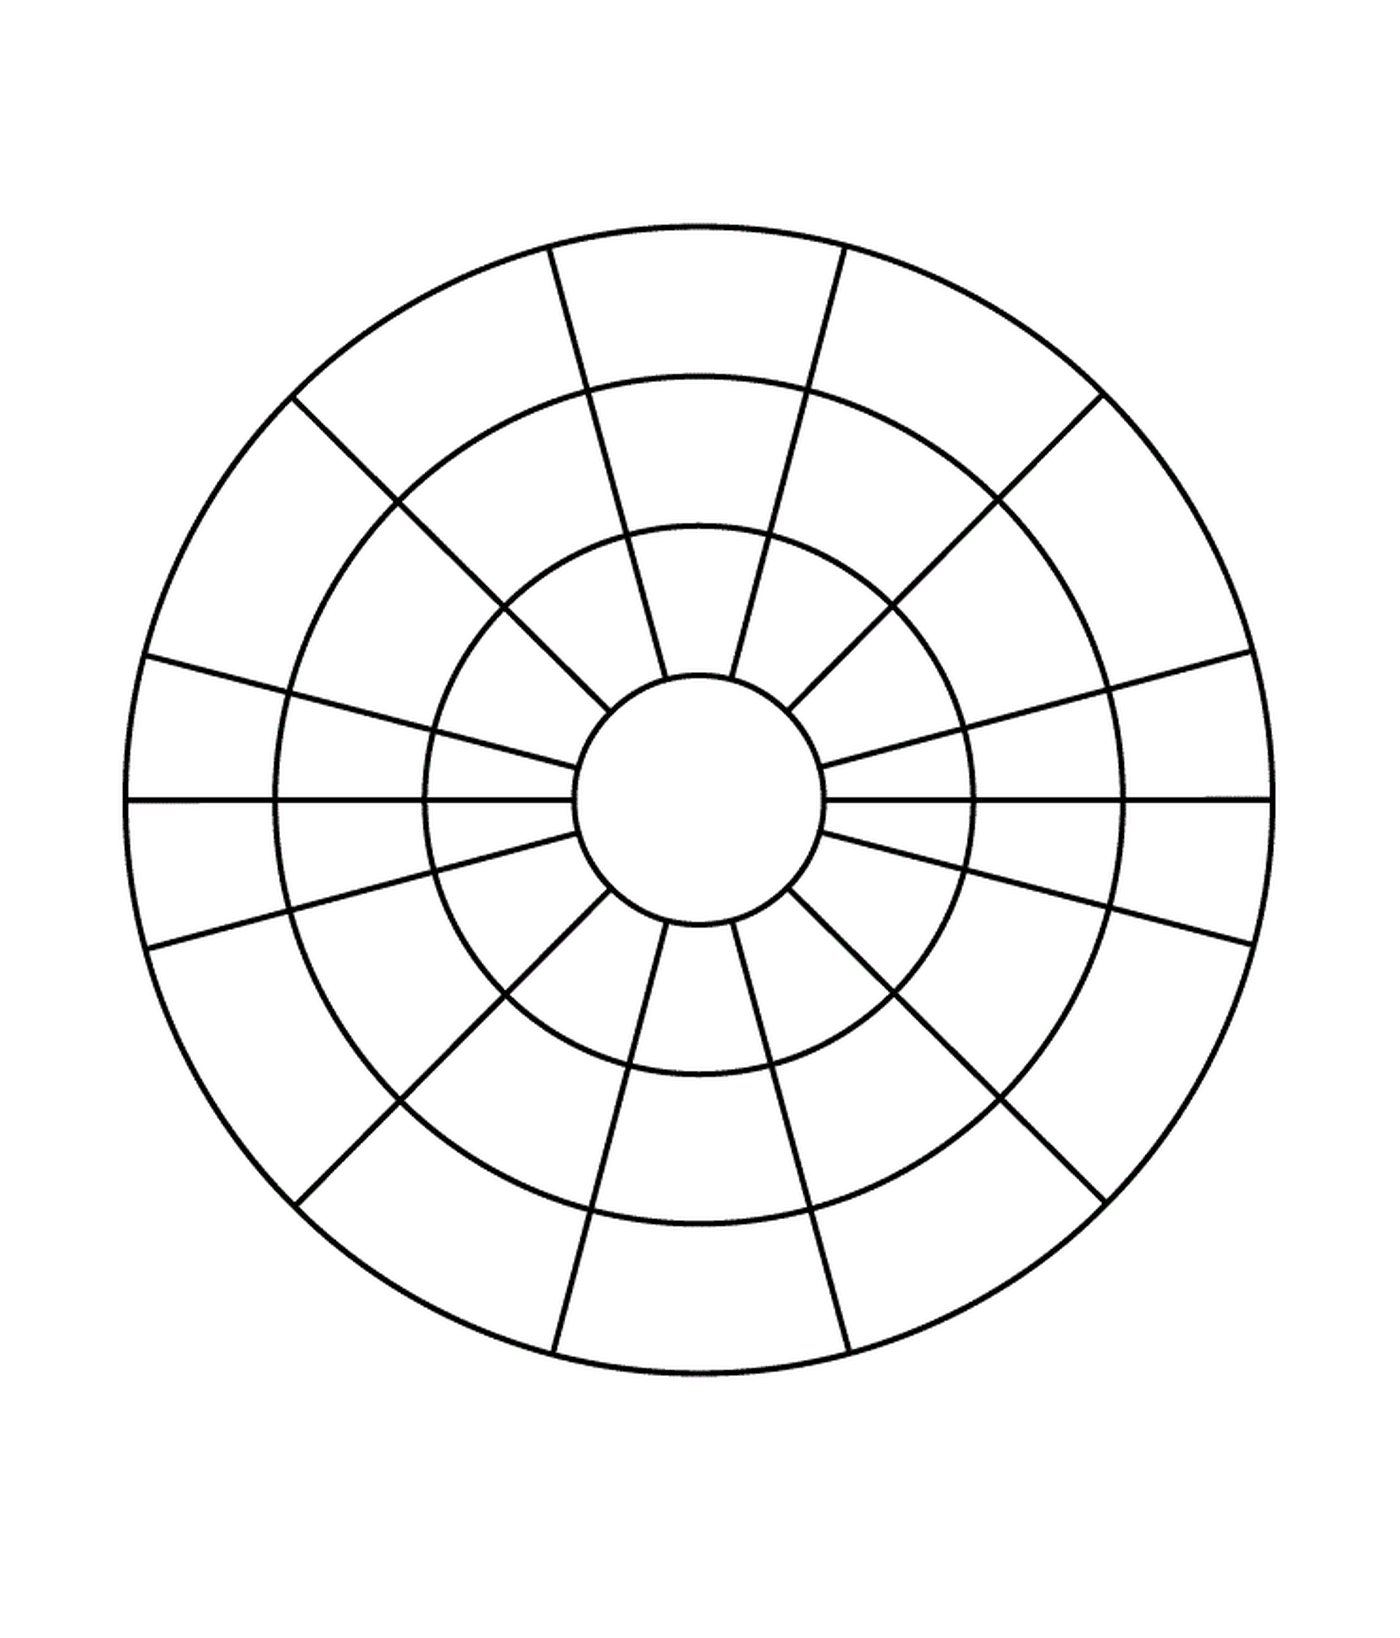  Un círculo dividido en cuatro secciones 